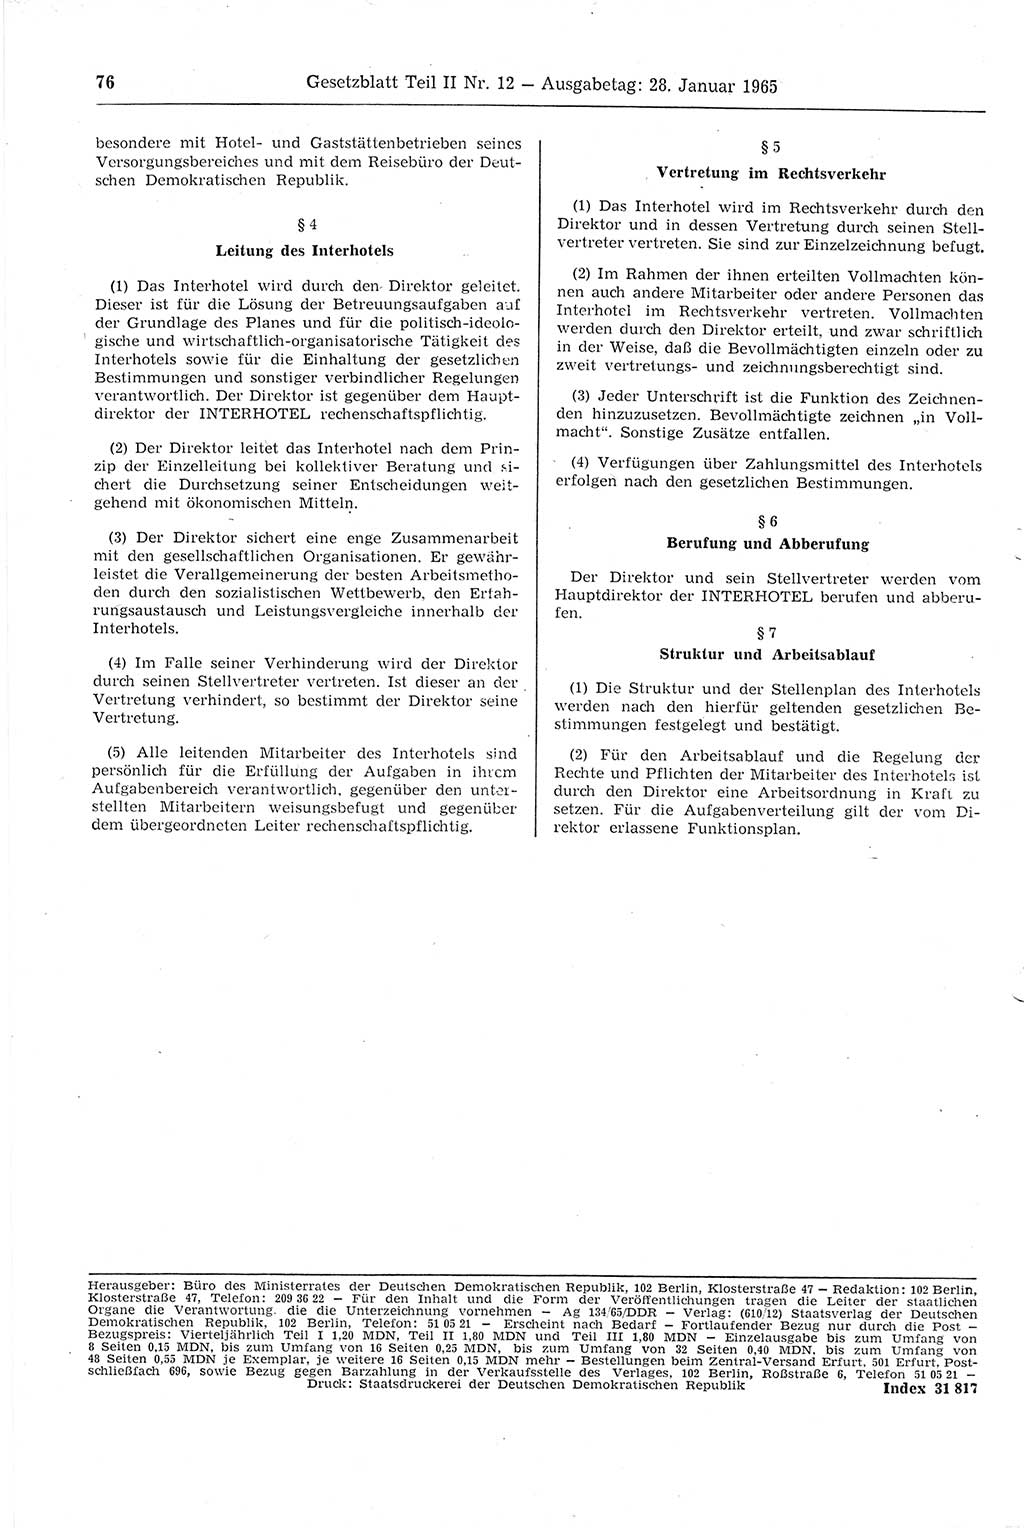 Gesetzblatt (GBl.) der Deutschen Demokratischen Republik (DDR) Teil ⅠⅠ 1965, Seite 76 (GBl. DDR ⅠⅠ 1965, S. 76)